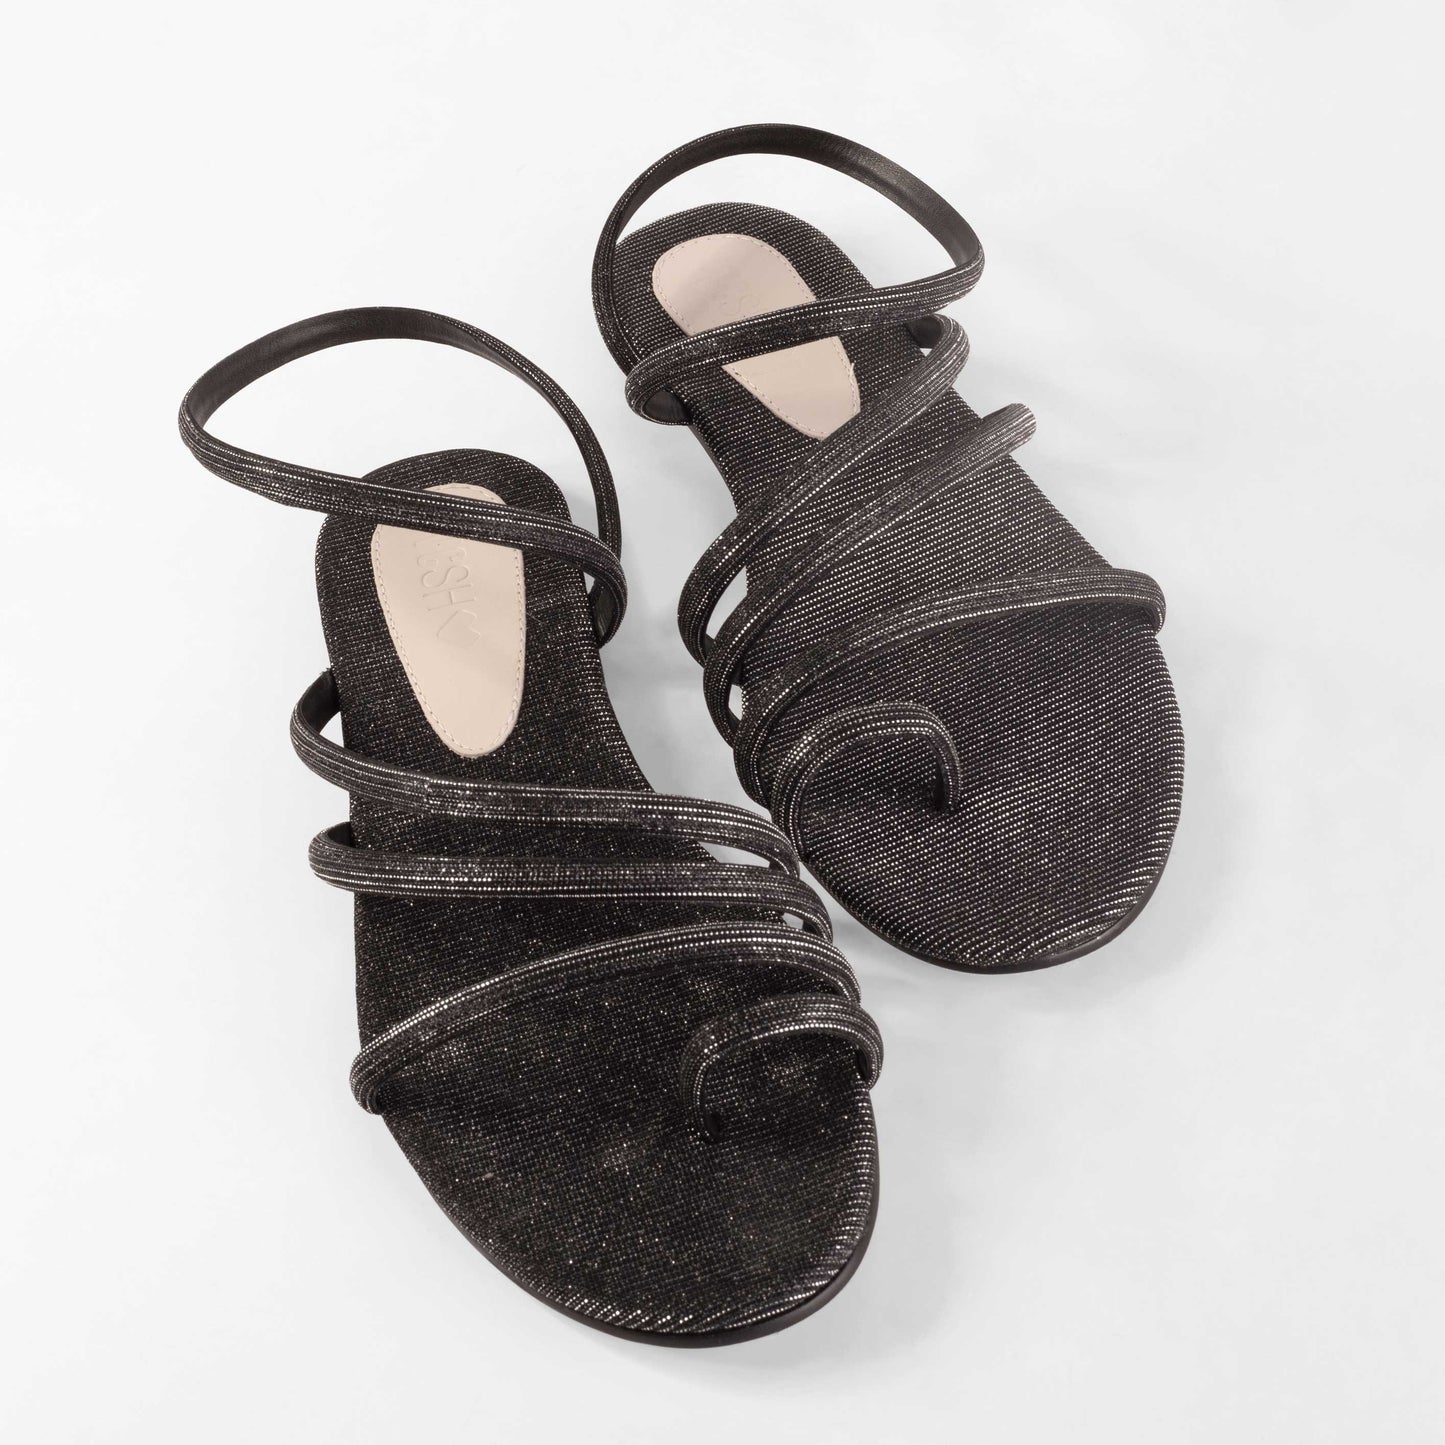 Vinci Shoes Alana Metallic Black Sandals